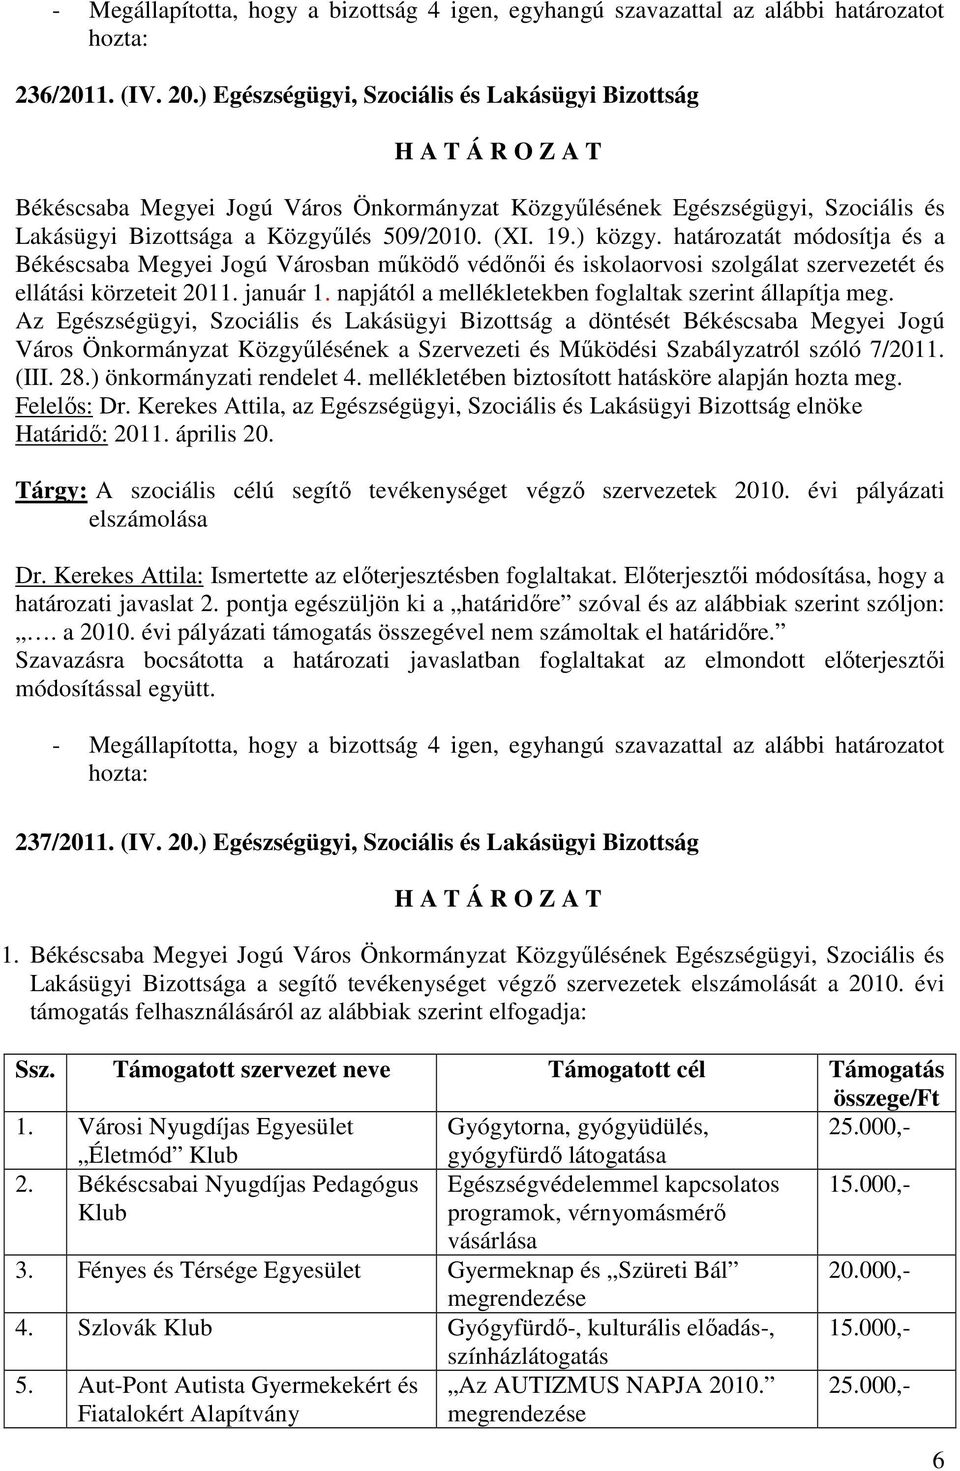 határozatát módosítja és a Békéscsaba Megyei Jogú Városban mőködı védınıi és iskolaorvosi szolgálat szervezetét és ellátási körzeteit 2011. január 1.